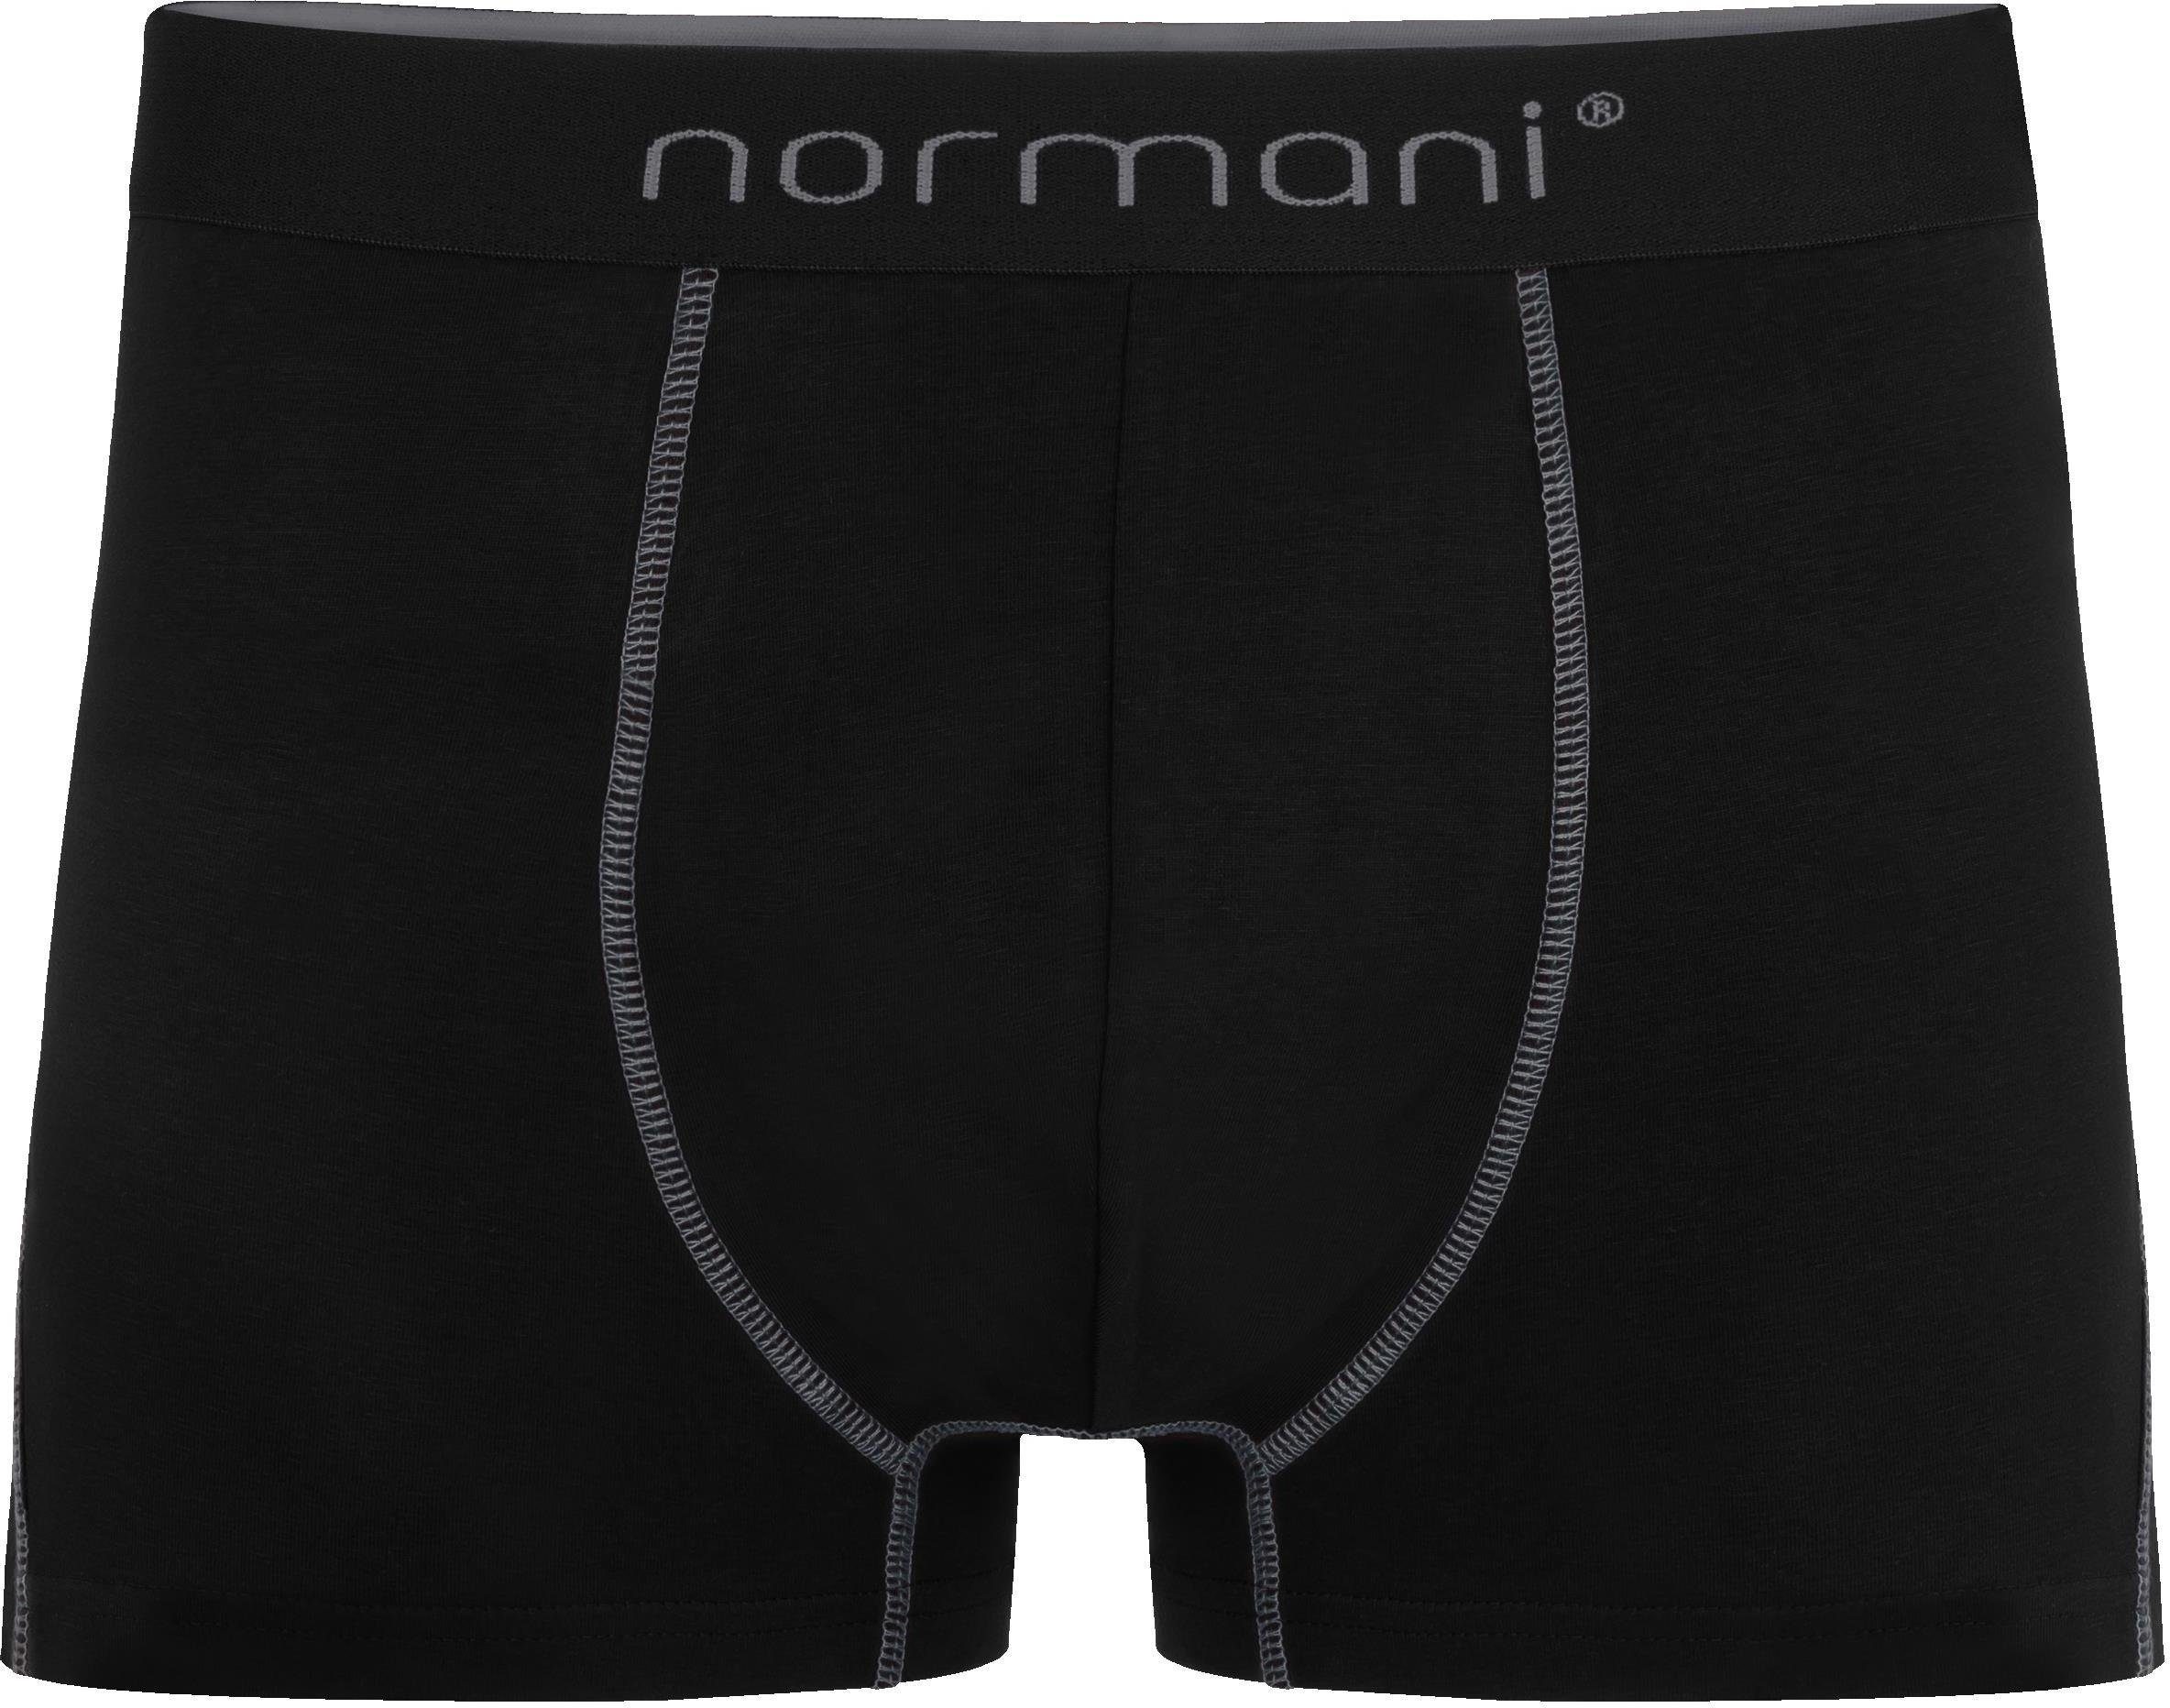 Baumwolle Herren atmungsaktiver für Unterhose 6 Boxershorts aus Baumwoll-Boxershorts Grau Männer normani